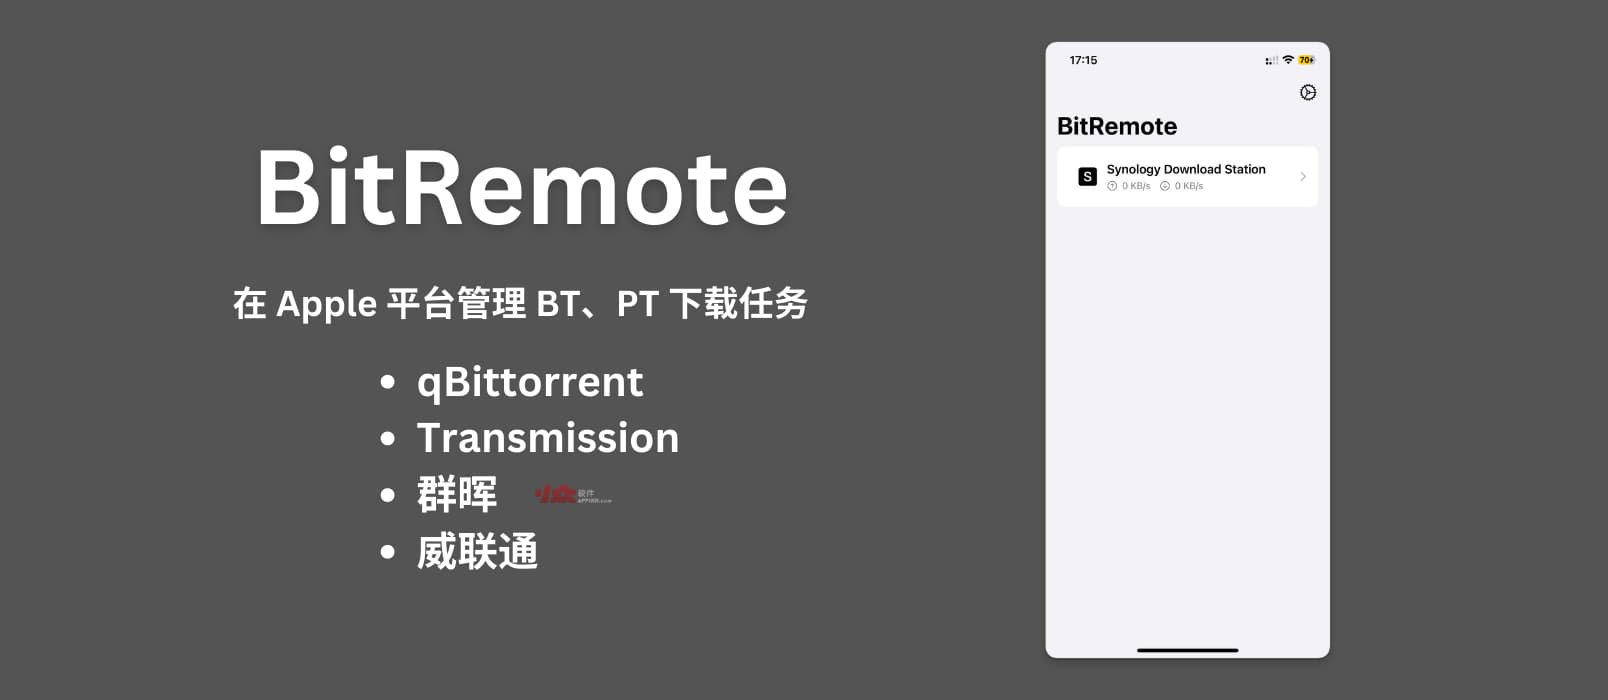 使用 BitRemote 在 macOS、iOS 上远程管理 BT、PT 下载任务｜qBittorrent、Transmission、群晖、威联通